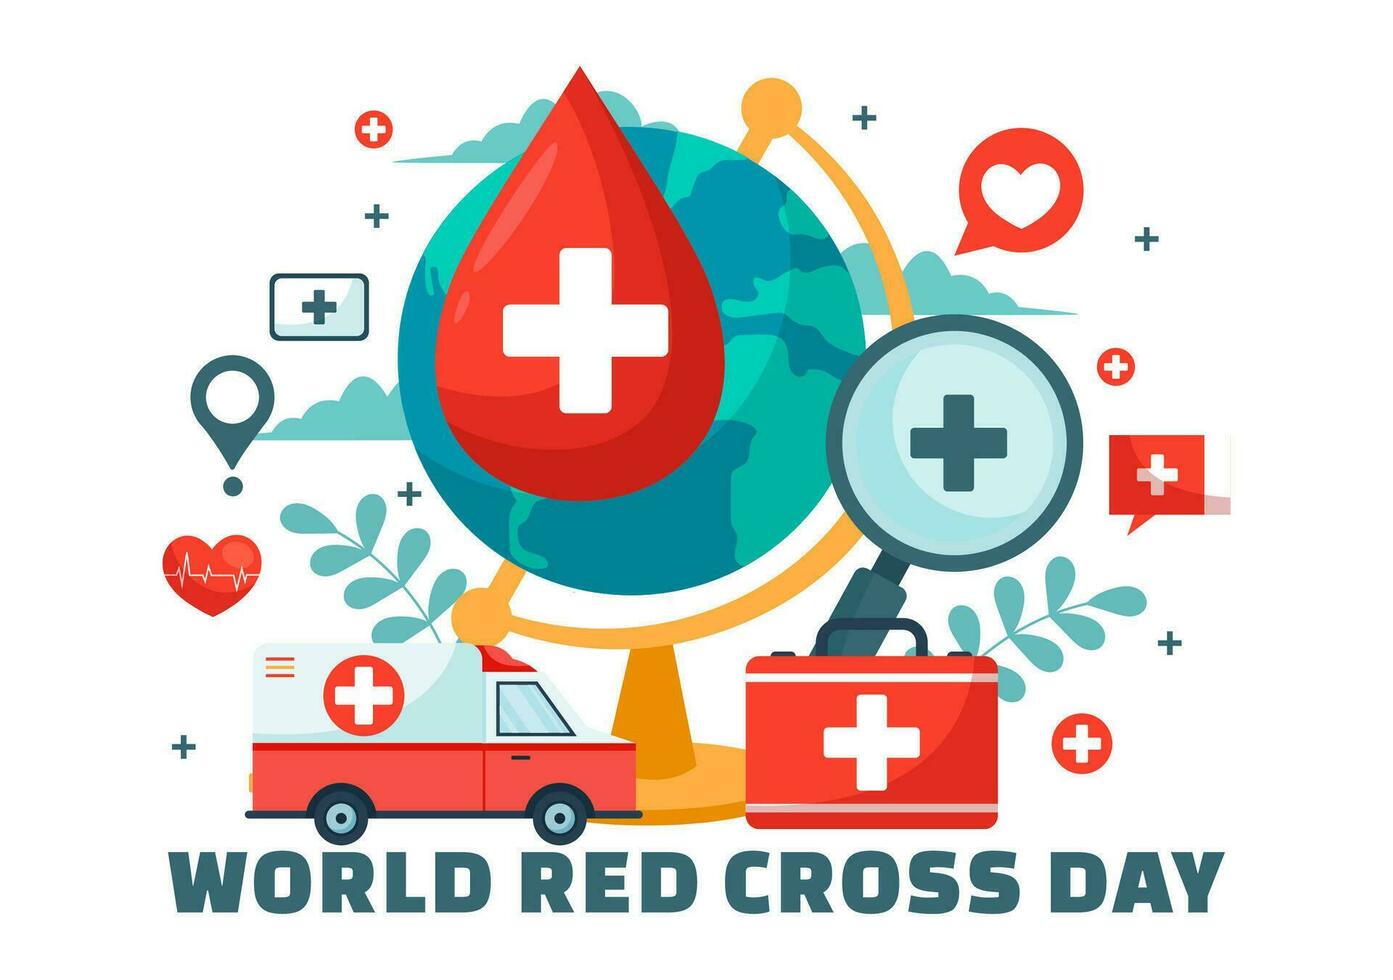 mondo rosso attraversare giorno vettore illustrazione su Maggio 8 per medico Salute e fornire sangue nel assistenza sanitaria piatto cartone animato sfondo design